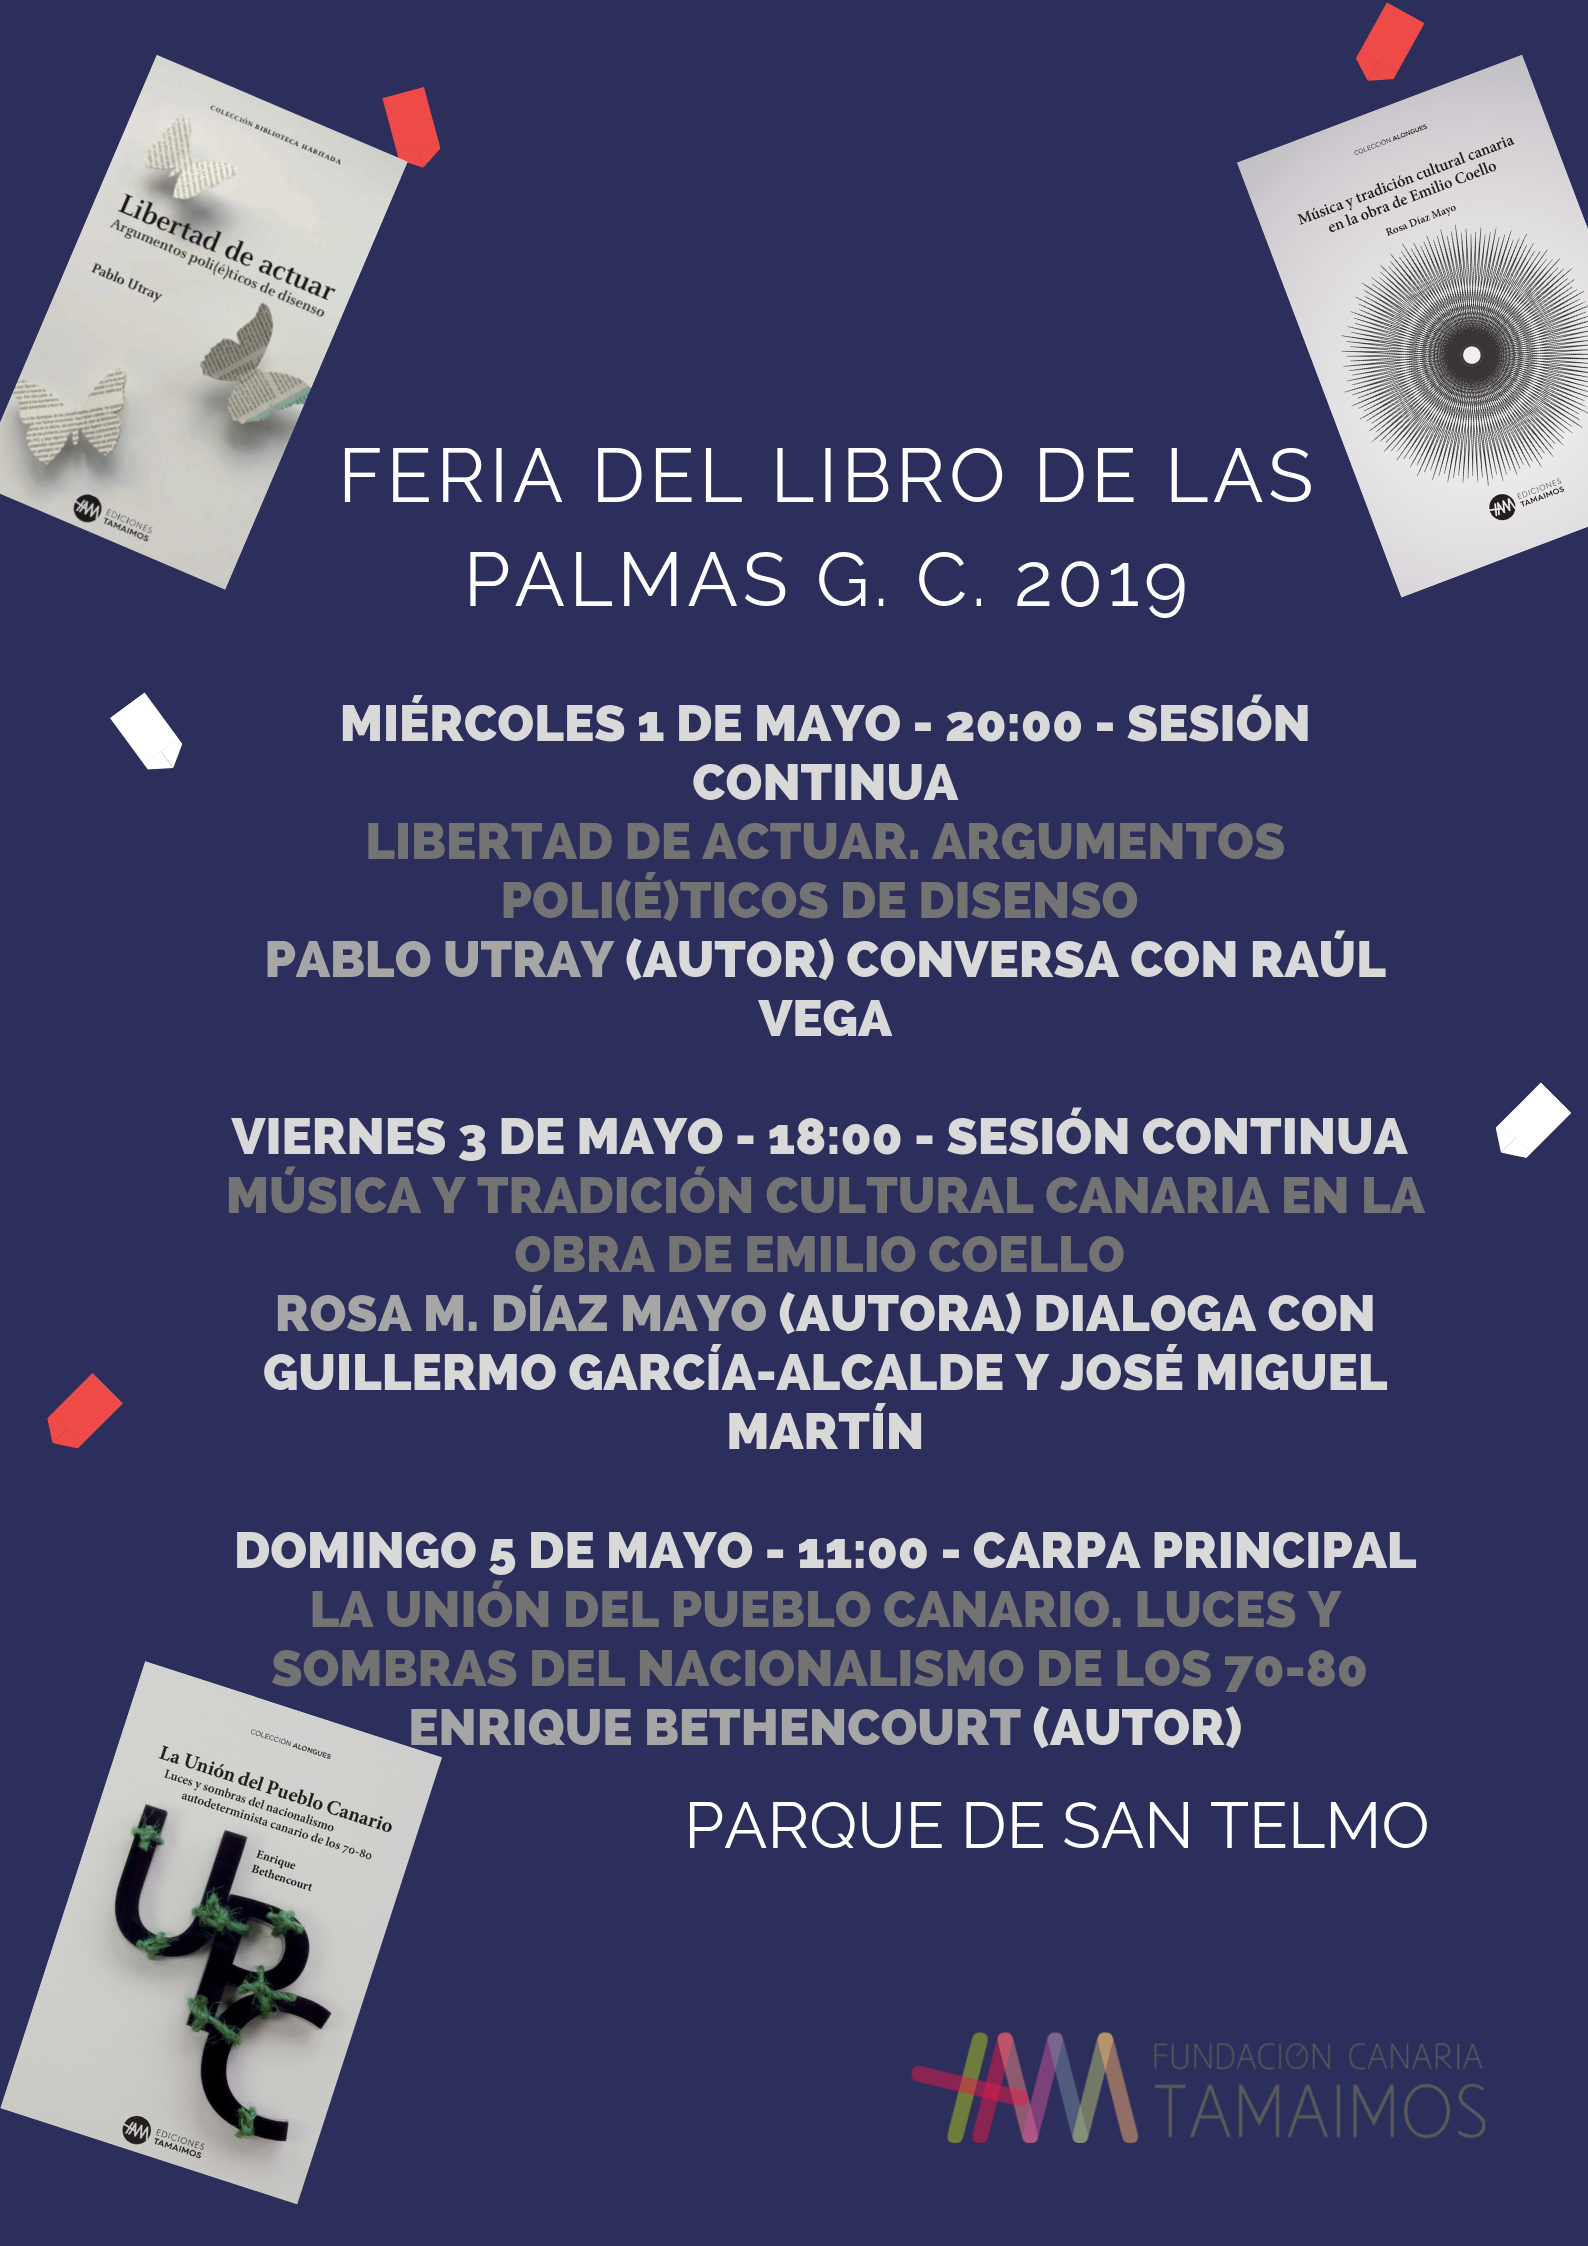 FERIA DEL LIBRO DE LAS PALMAS G. C. 2019